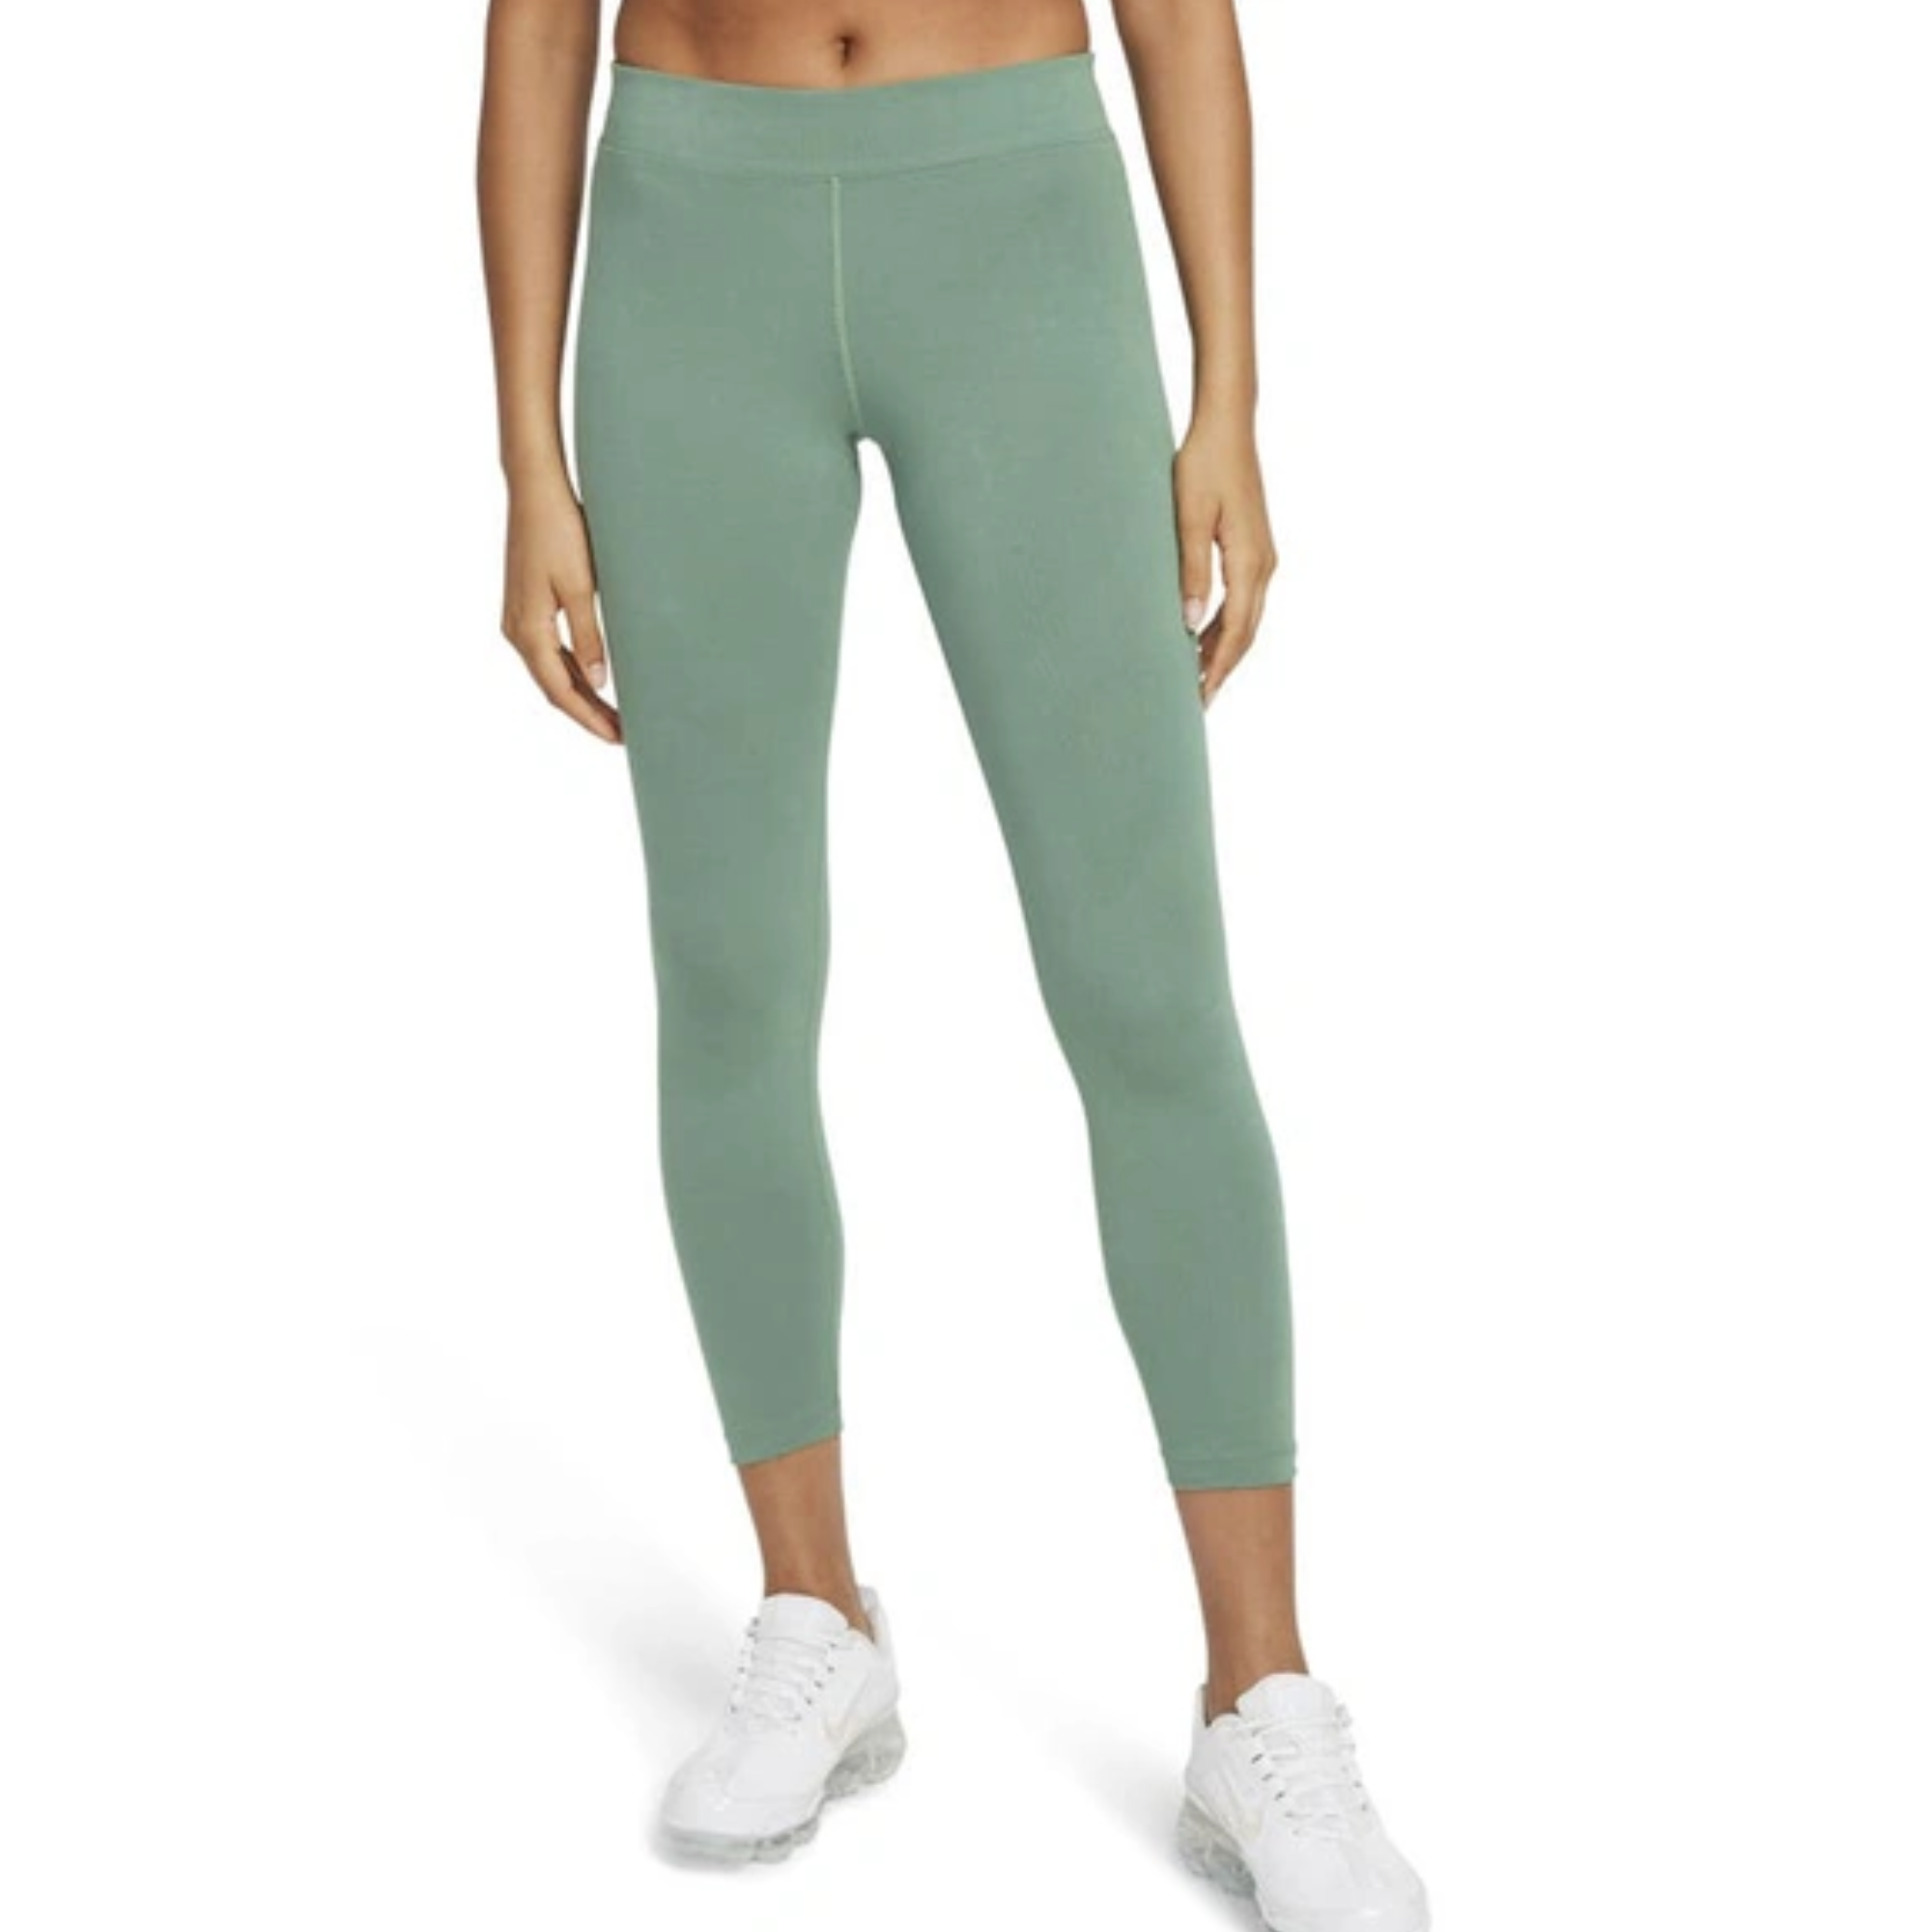 Nike Women's 7/8 Mid Rise Green Leggings